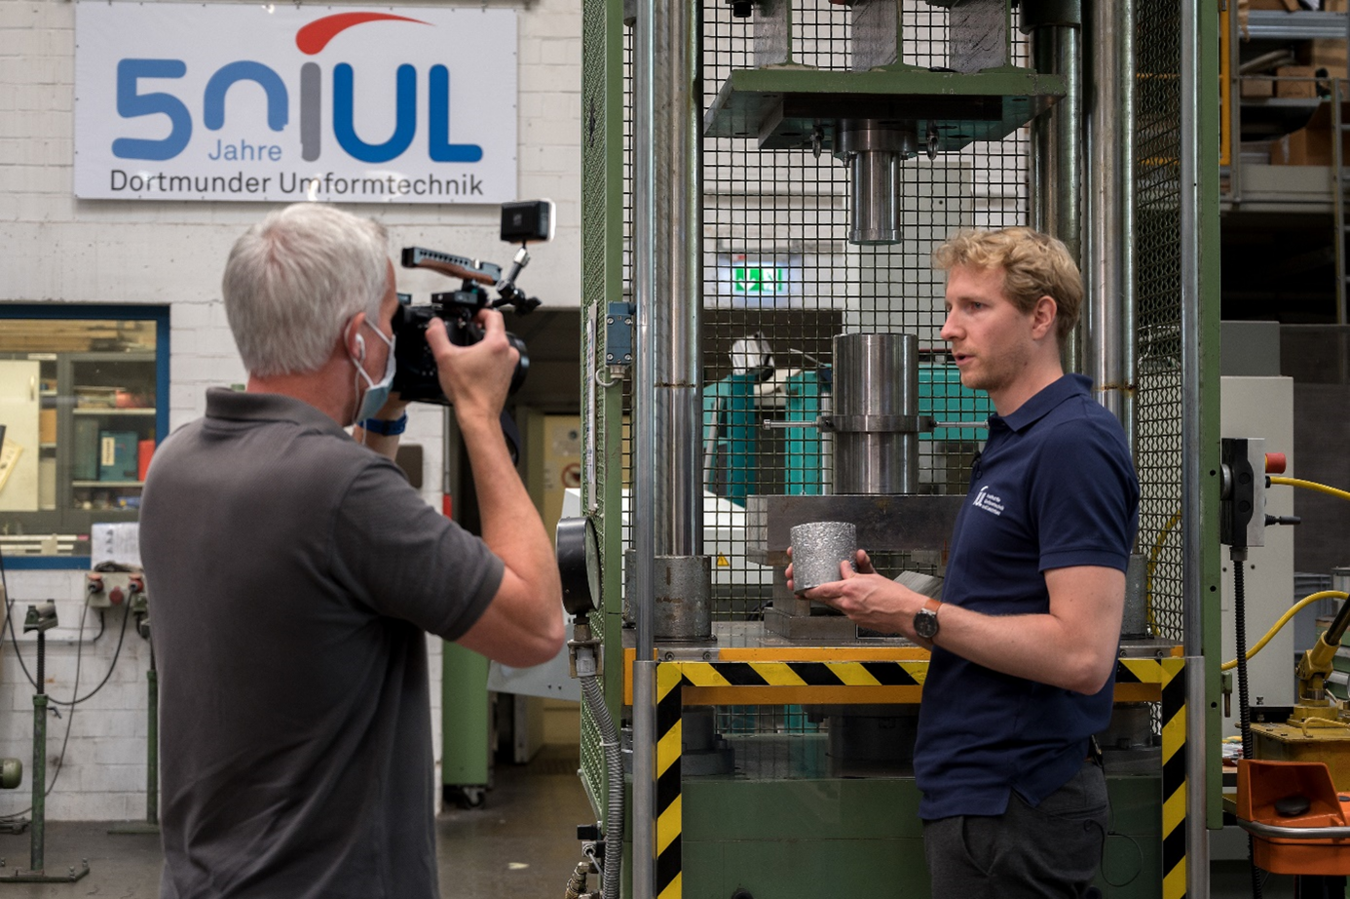 IUL Mitarbeiter André Schulze erklärt das Kompaktieren der Aluminiumspäne